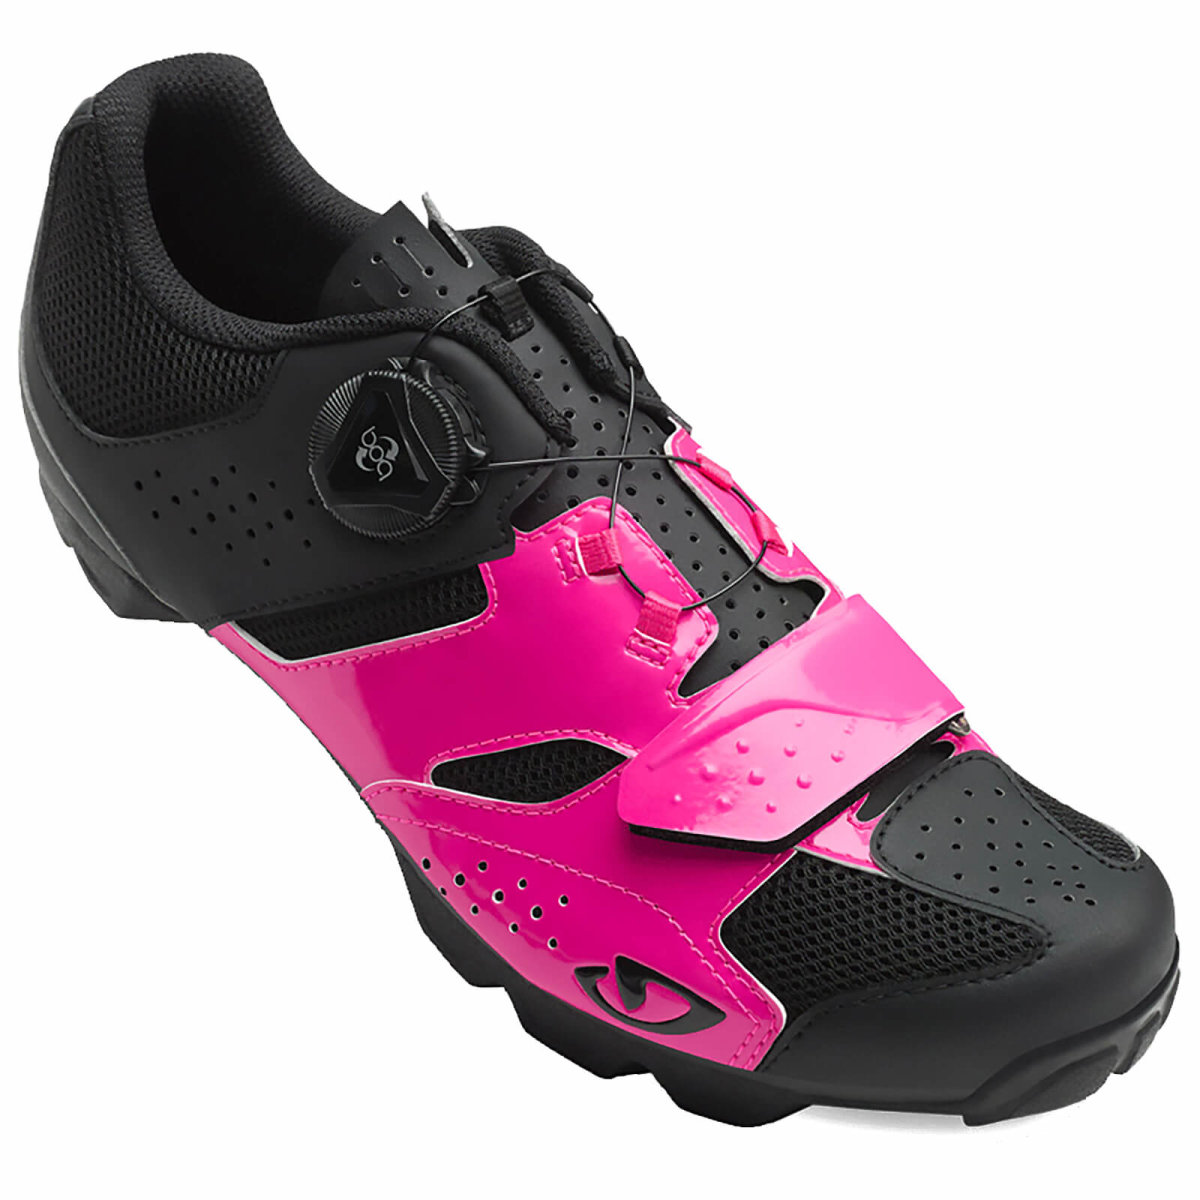 Велотуфли женские Giro Cylinder W черно-розовые 7089751, 7089752, 7089753